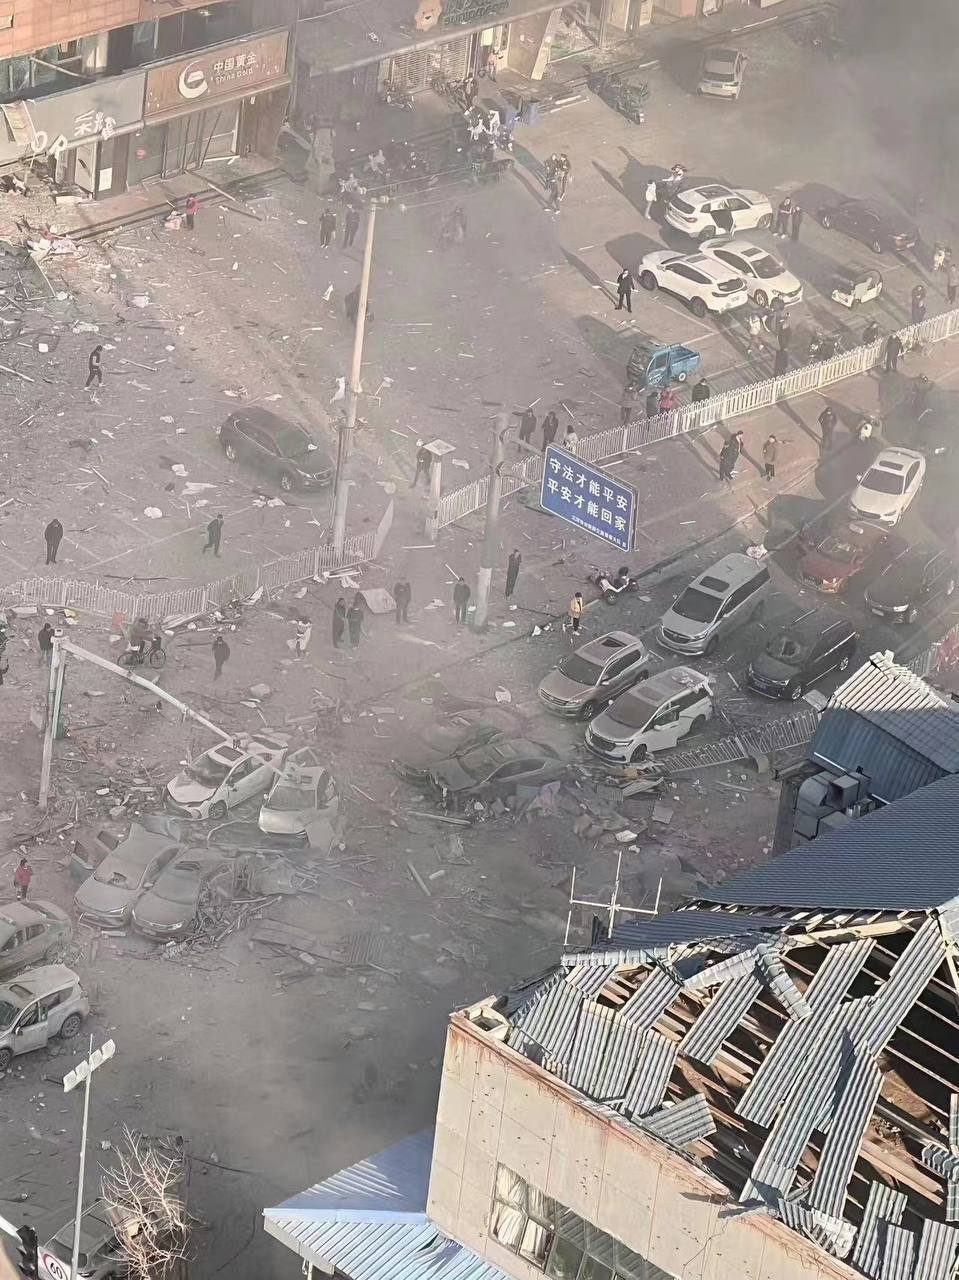 燕郊爆炸7死27傷 央視直播被切斷地方政府道歉